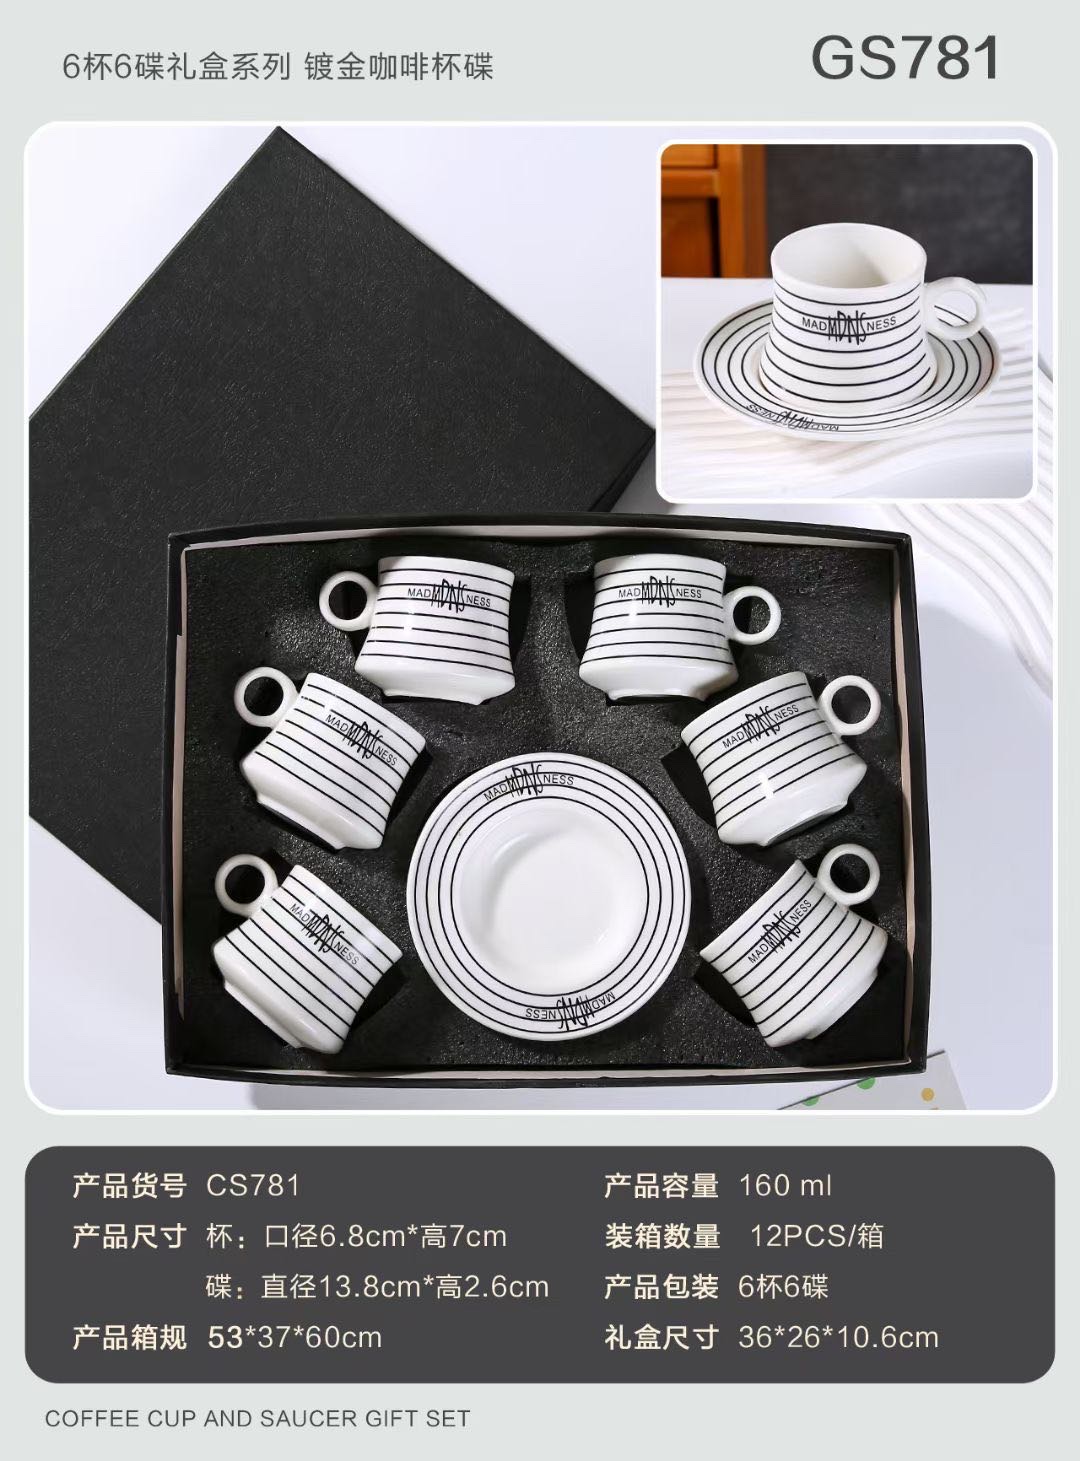 新款线条6杯6碟 陶瓷杯碟套装 镀金咖啡杯碟 礼盒包装高端定制设计